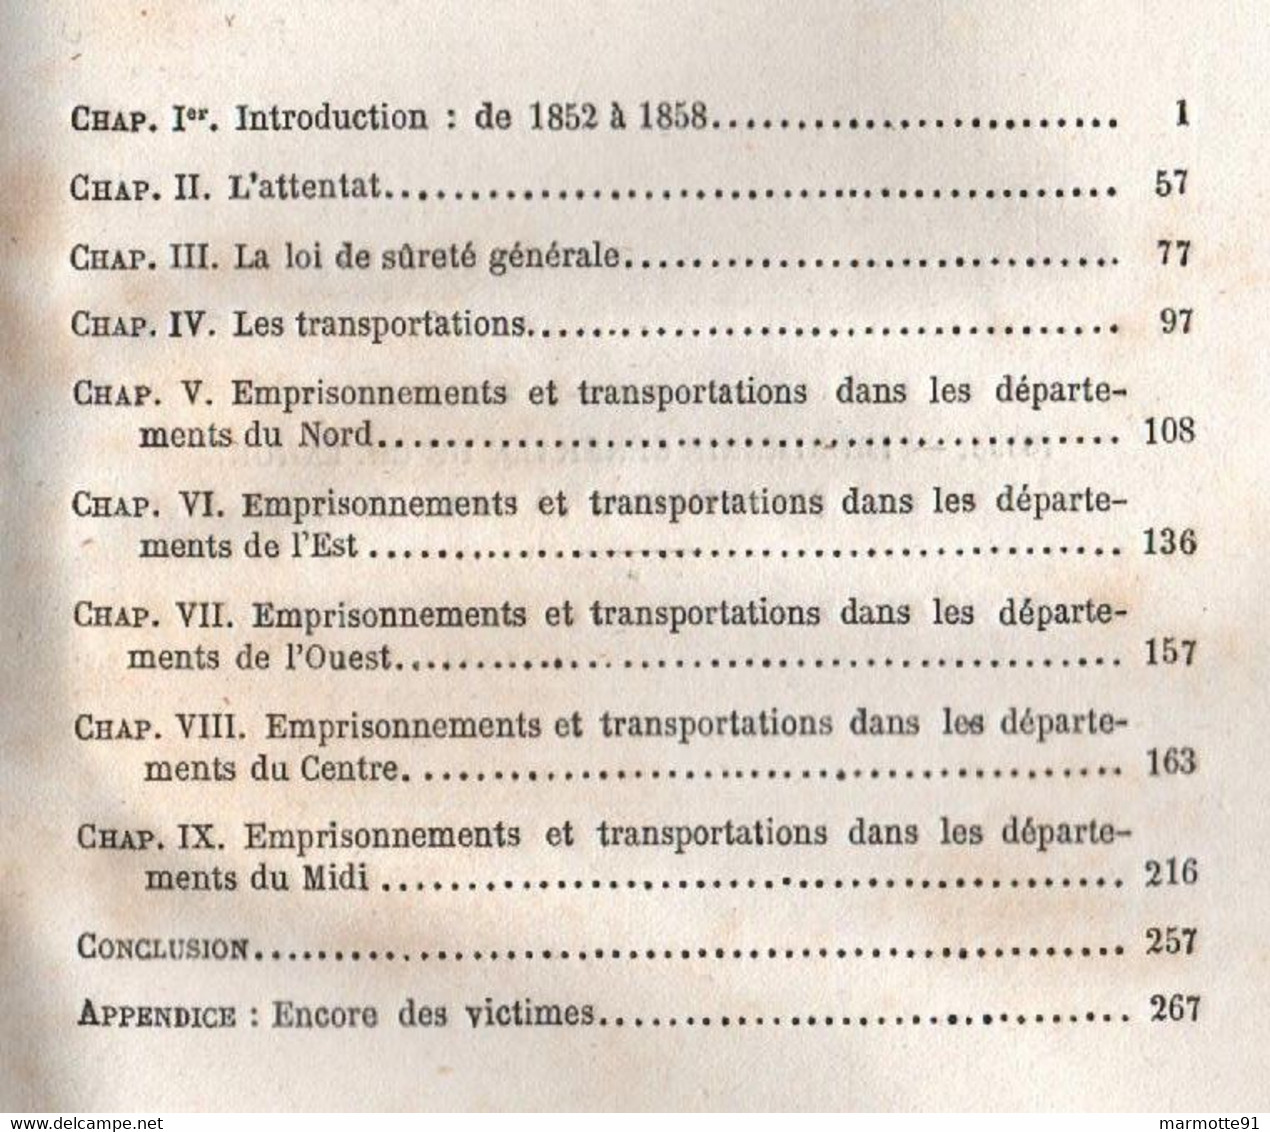 LES SUSPECTS EN 1858 LOI DE SURETE GENERALE EMPRISONNEMENTS TRANSPORTATIONS PAR E. TENOT ET A. DUBOST - Sociologia